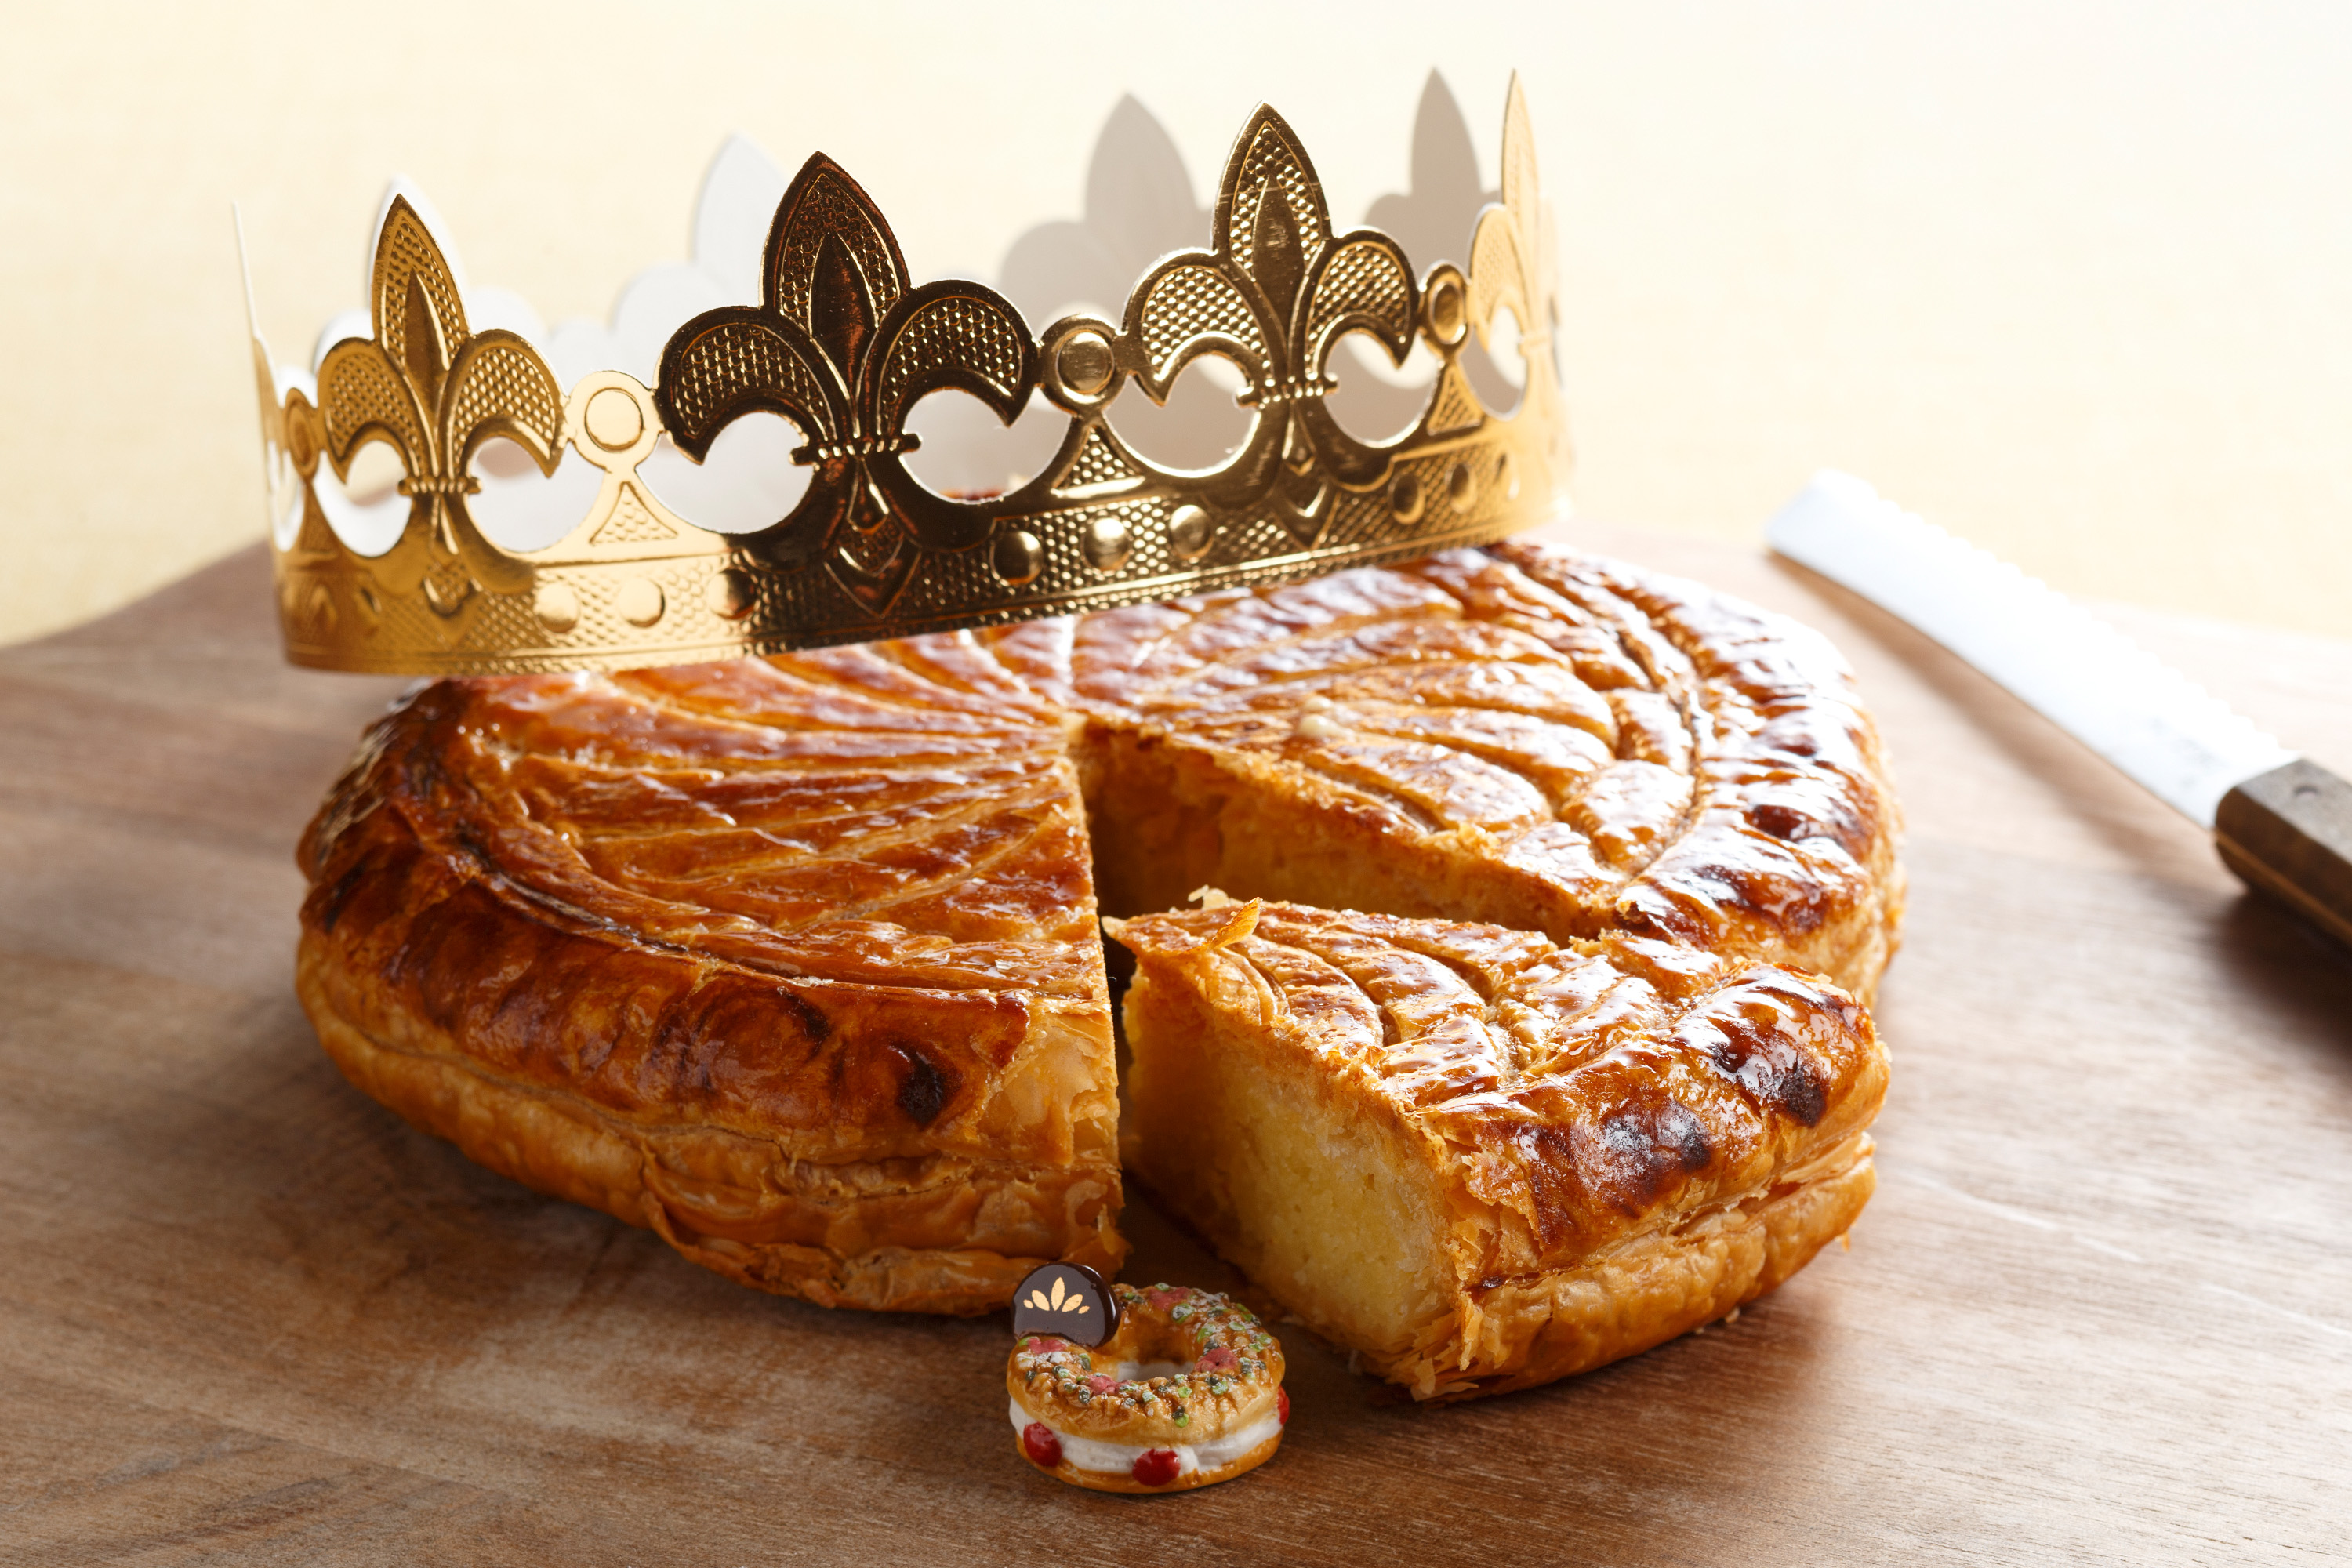 フランス伝統の 王様のお菓子 で日本のお正月を祝う ガレット デ ロワ を期間限定販売 エクセルホテル東急のプレスリリース